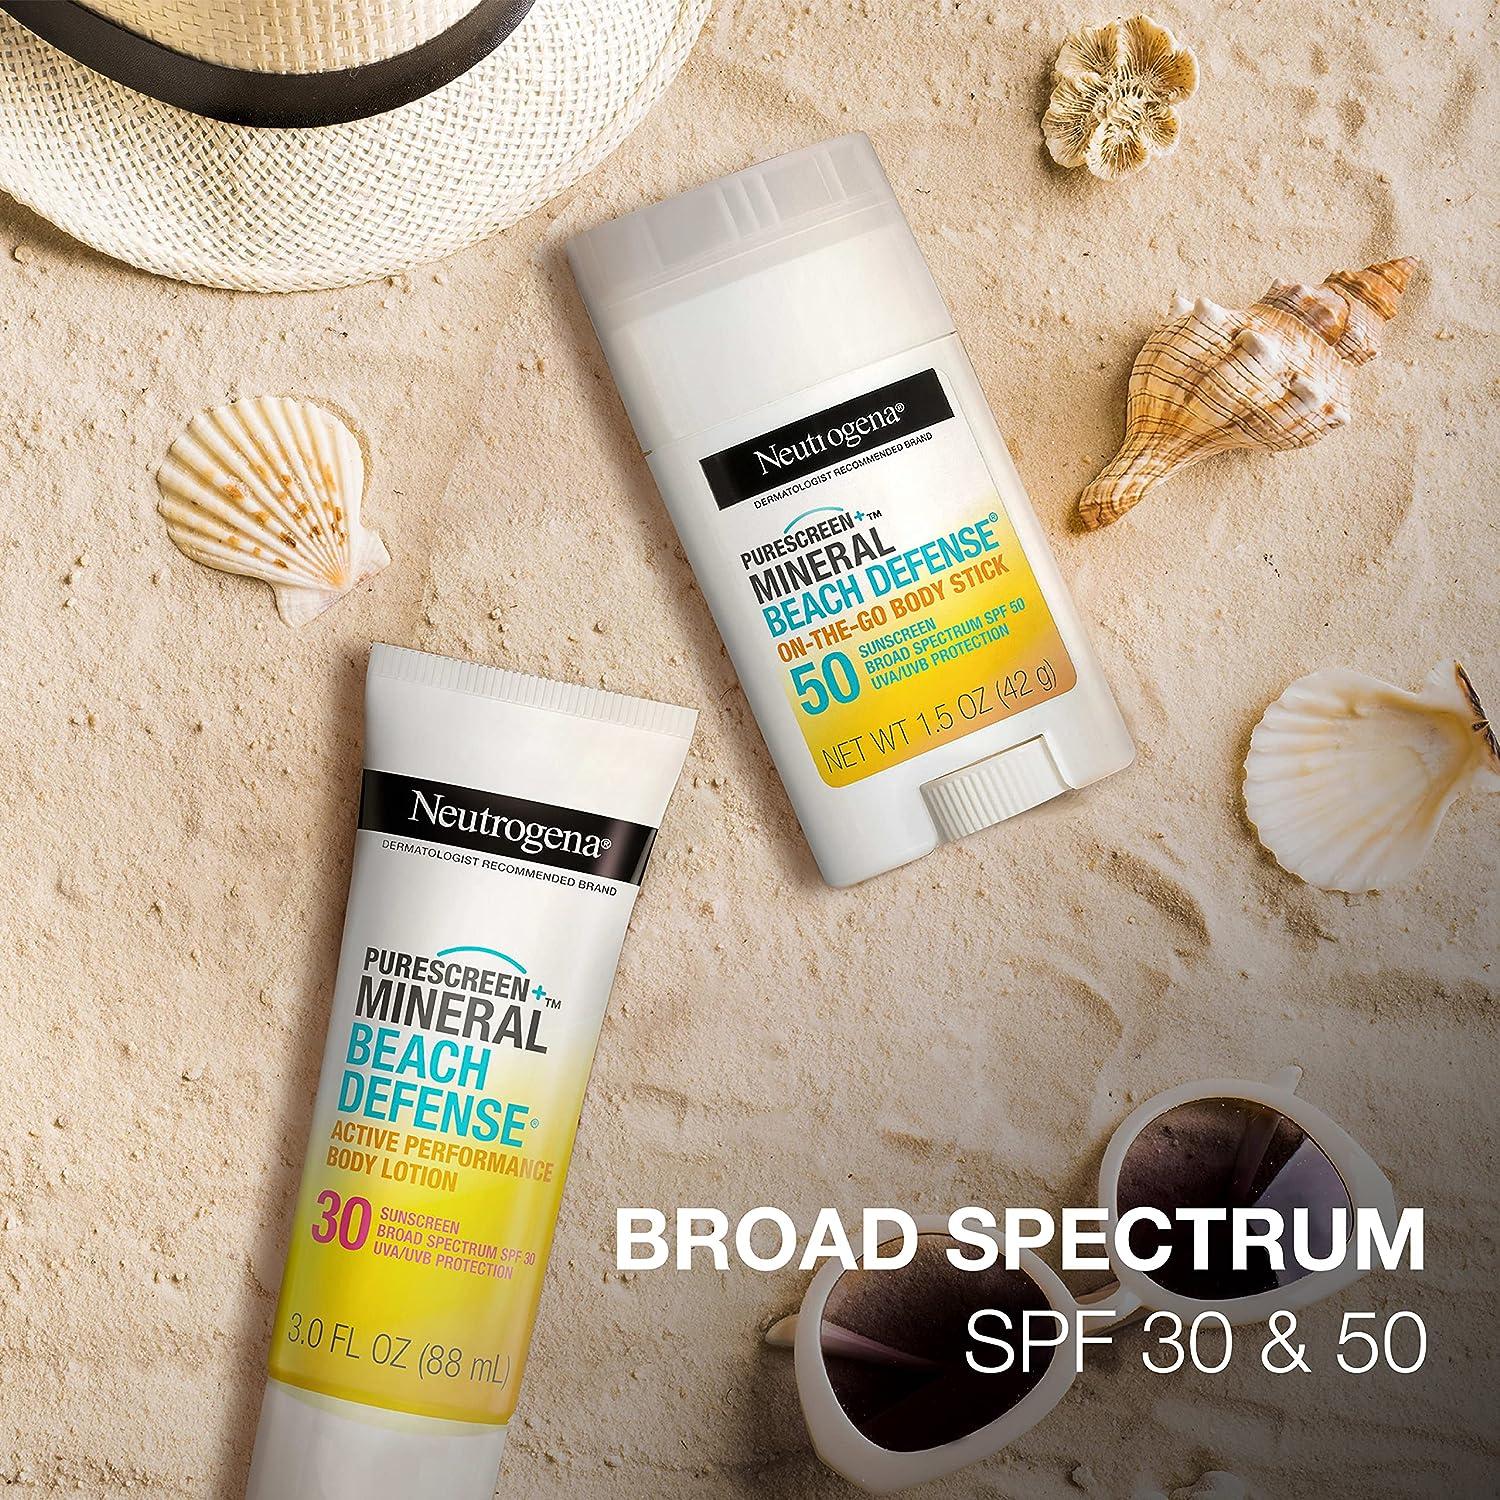 Neutrogena Beach Defense Spray Body Sunscreen, SPF 30, 8.5 oz 